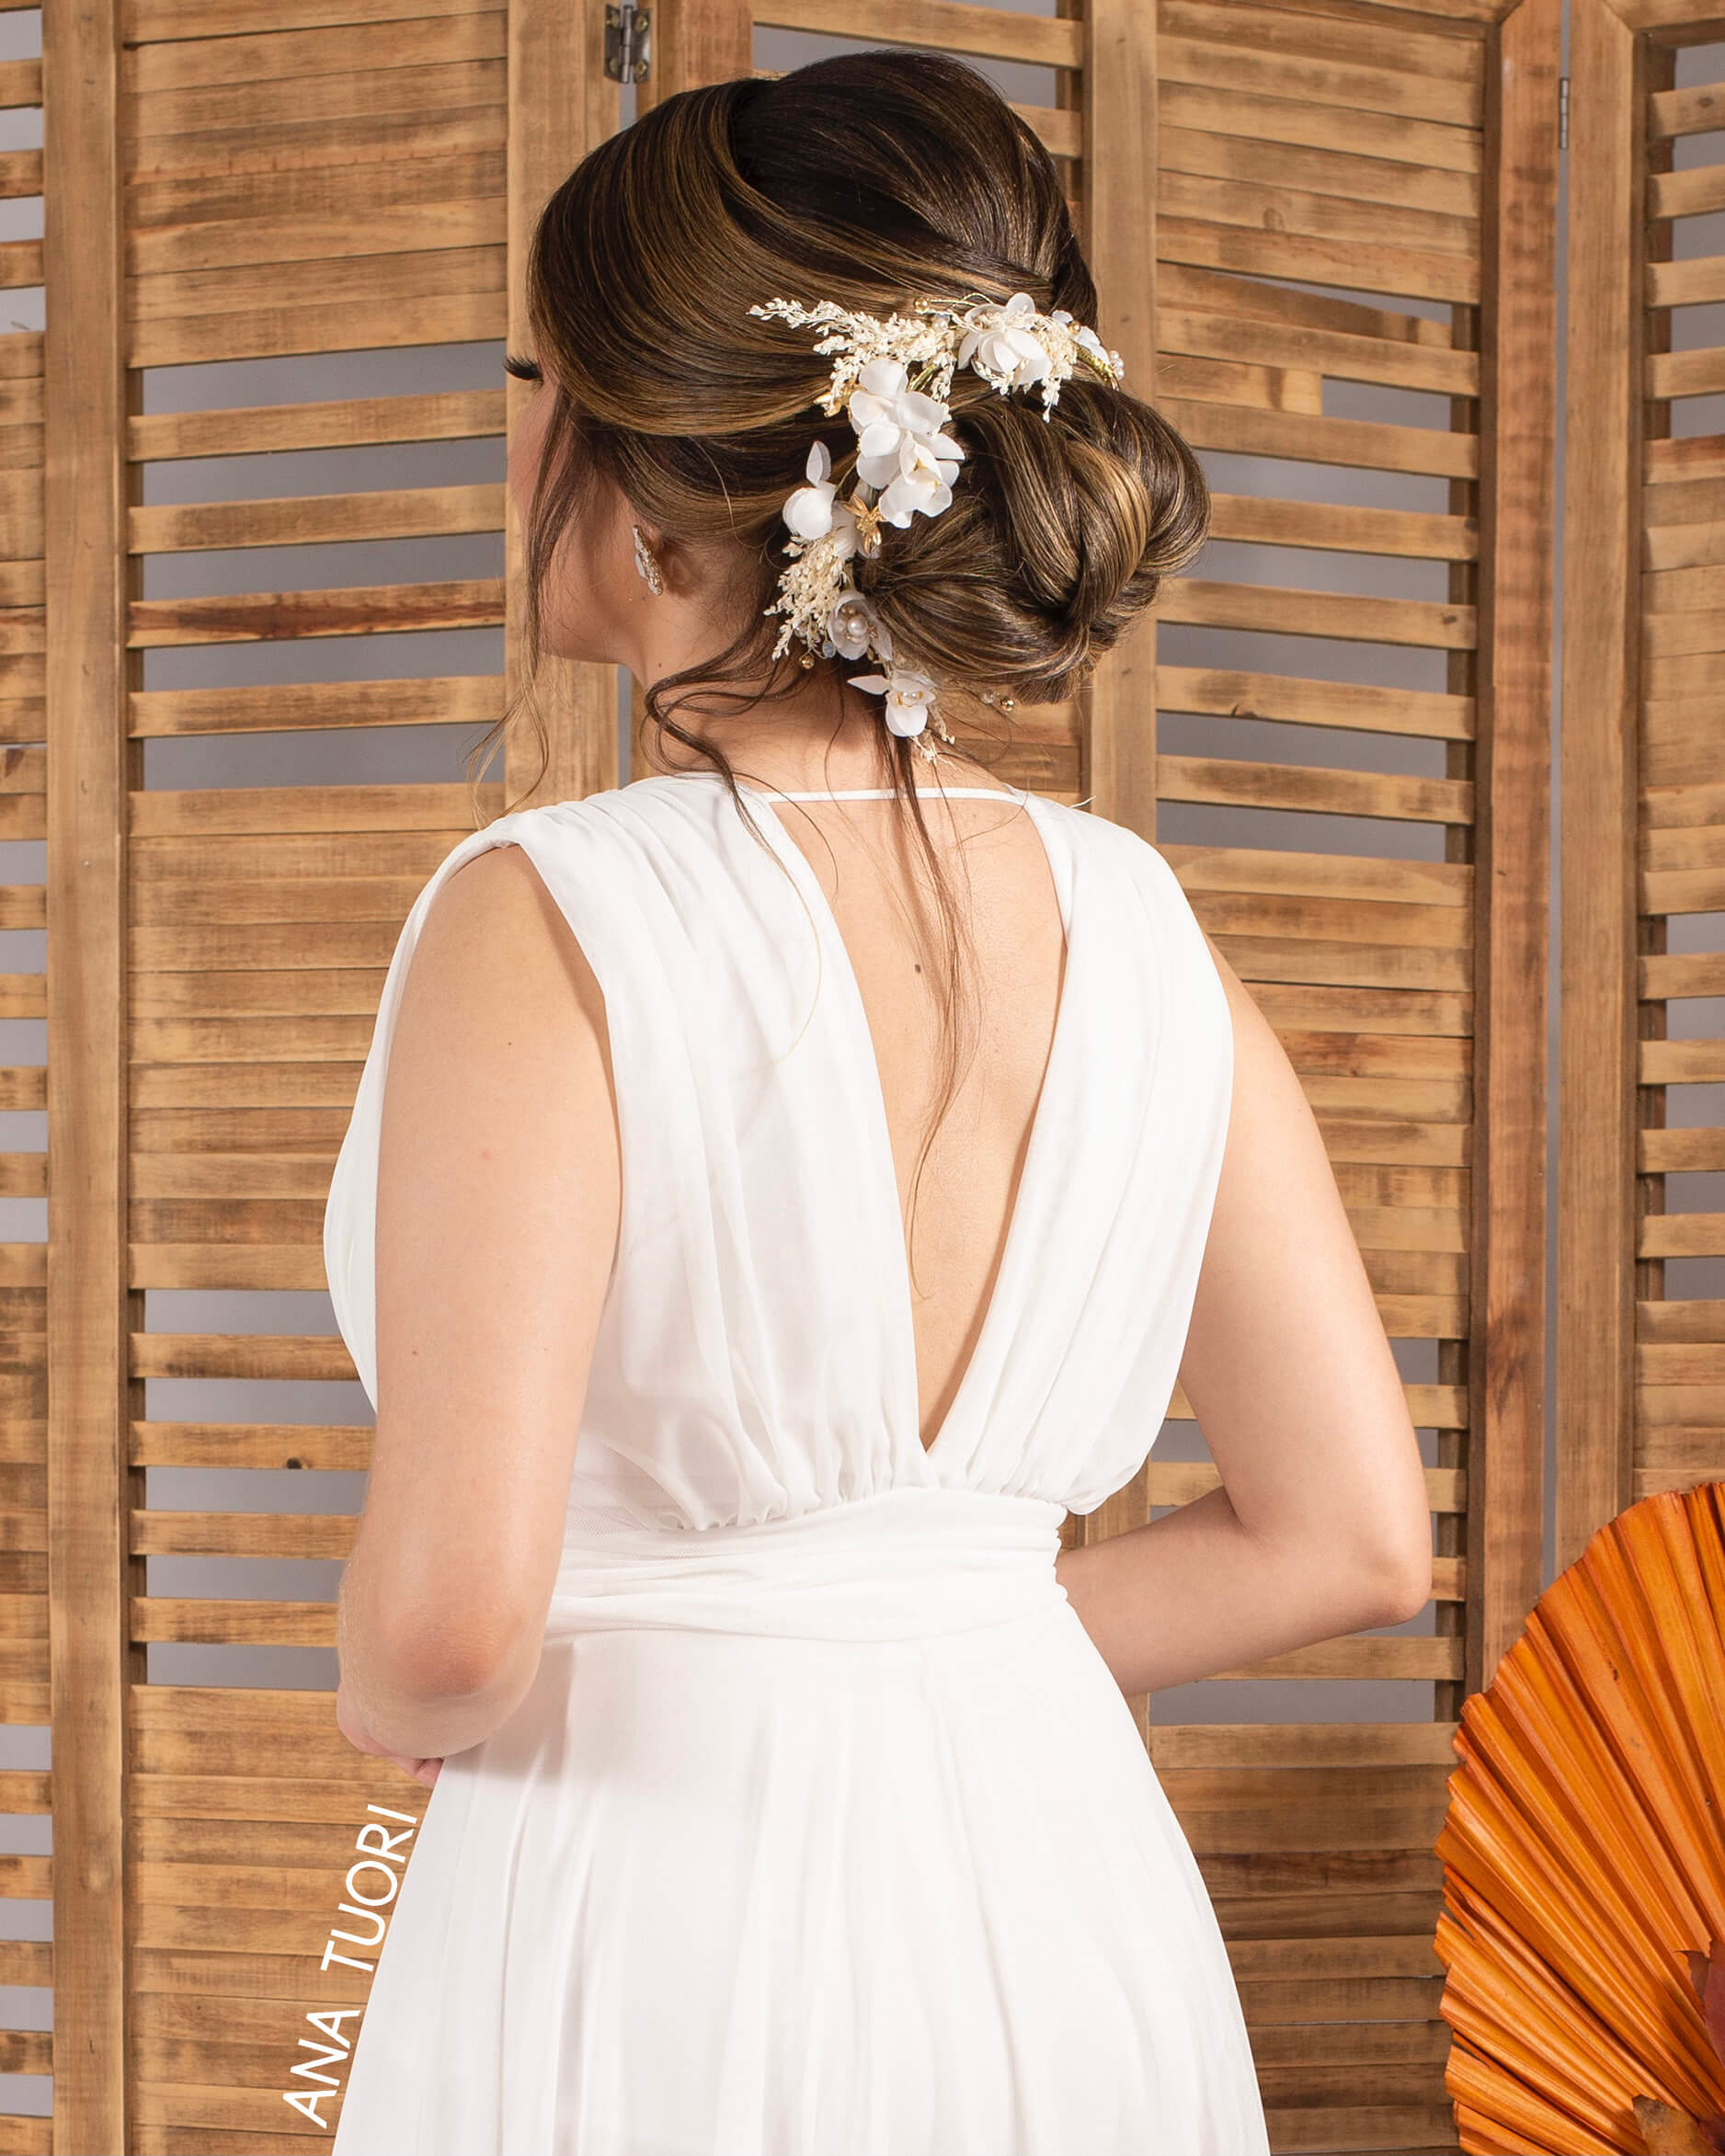 Como escolher o penteado ideal para cada vestido de festa? | Ana Tuori Blog